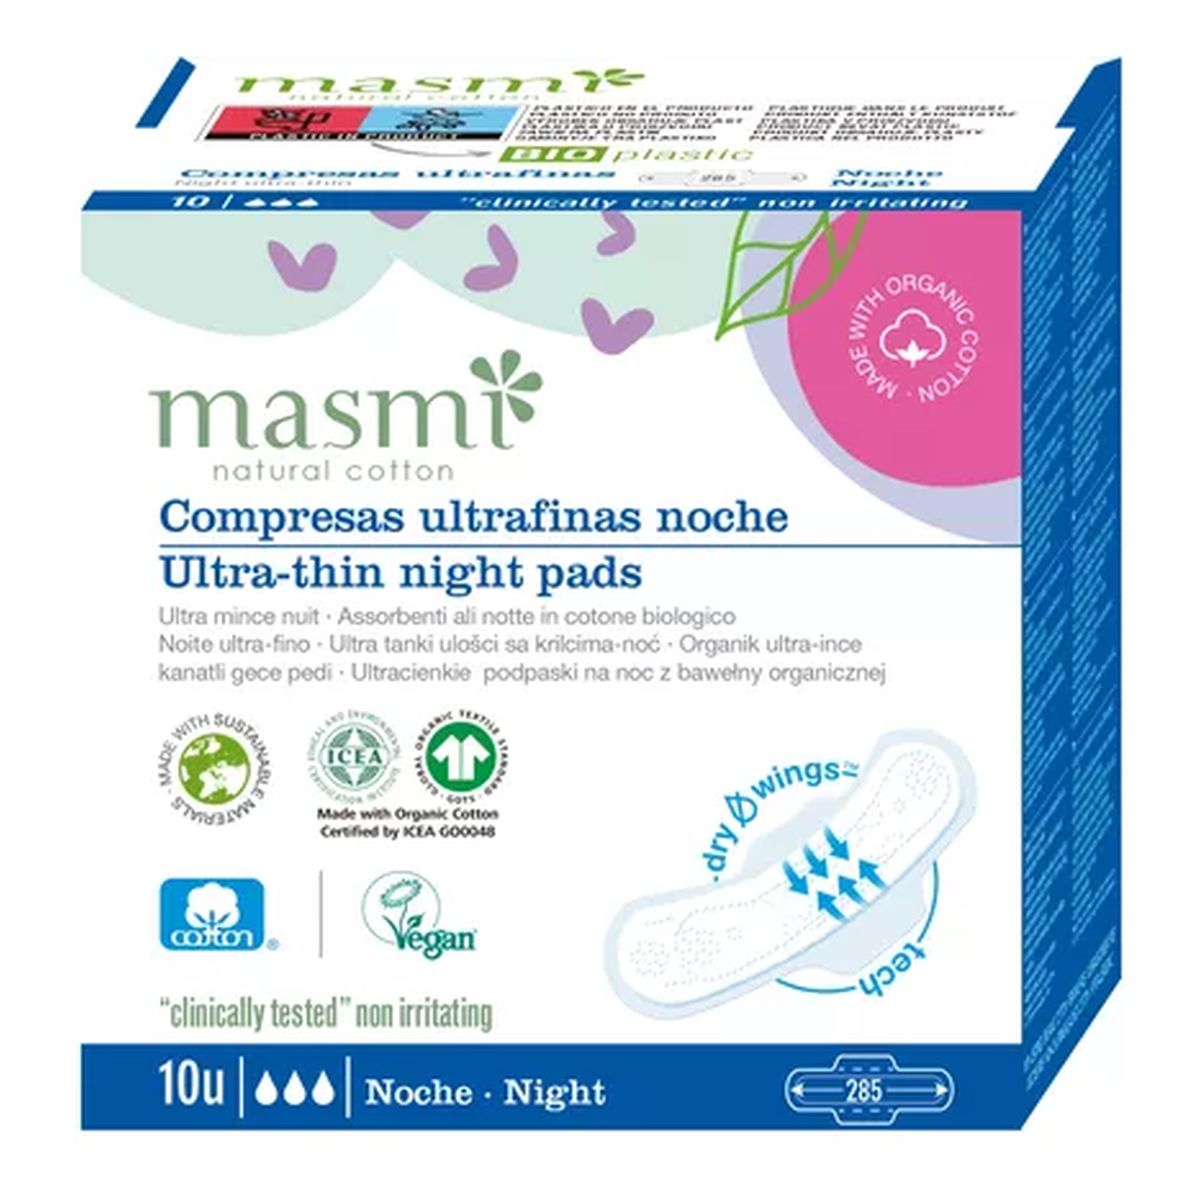 MASMI Ultracienkie bawełniane podpaski na noc ze skrzydełkami -100% bawełny organicznej 10 szt.